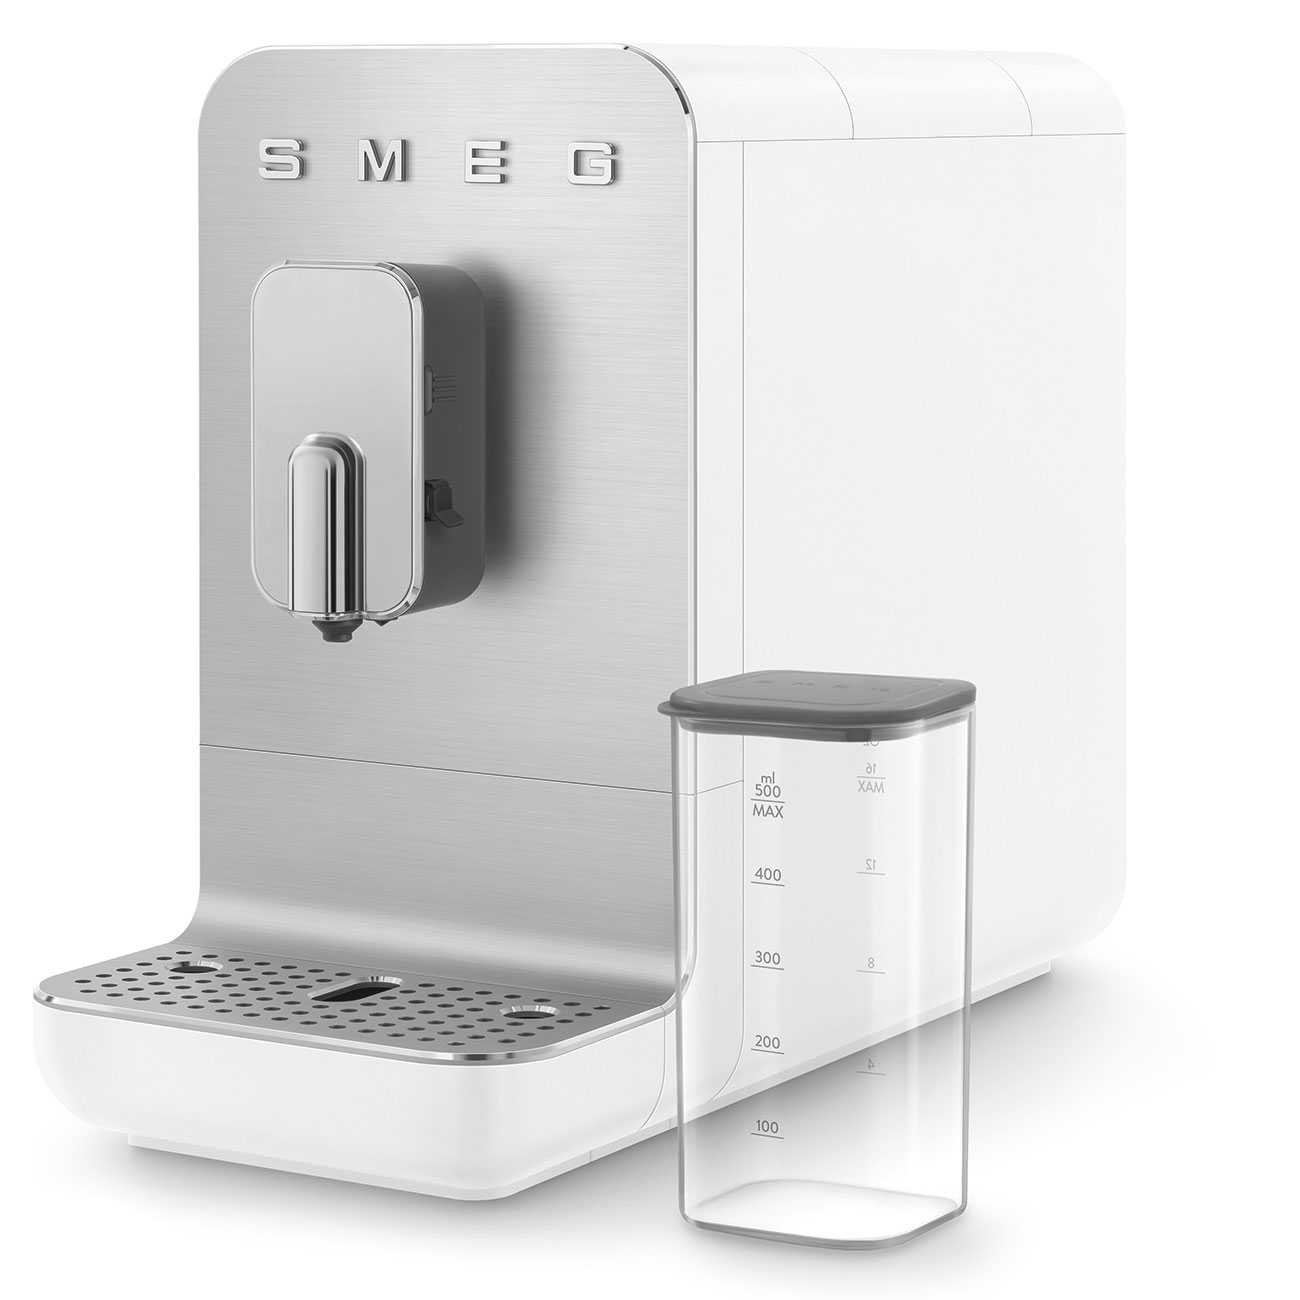 SMEG Weiß Kaffeevollautomat mit Milchfunktion_4